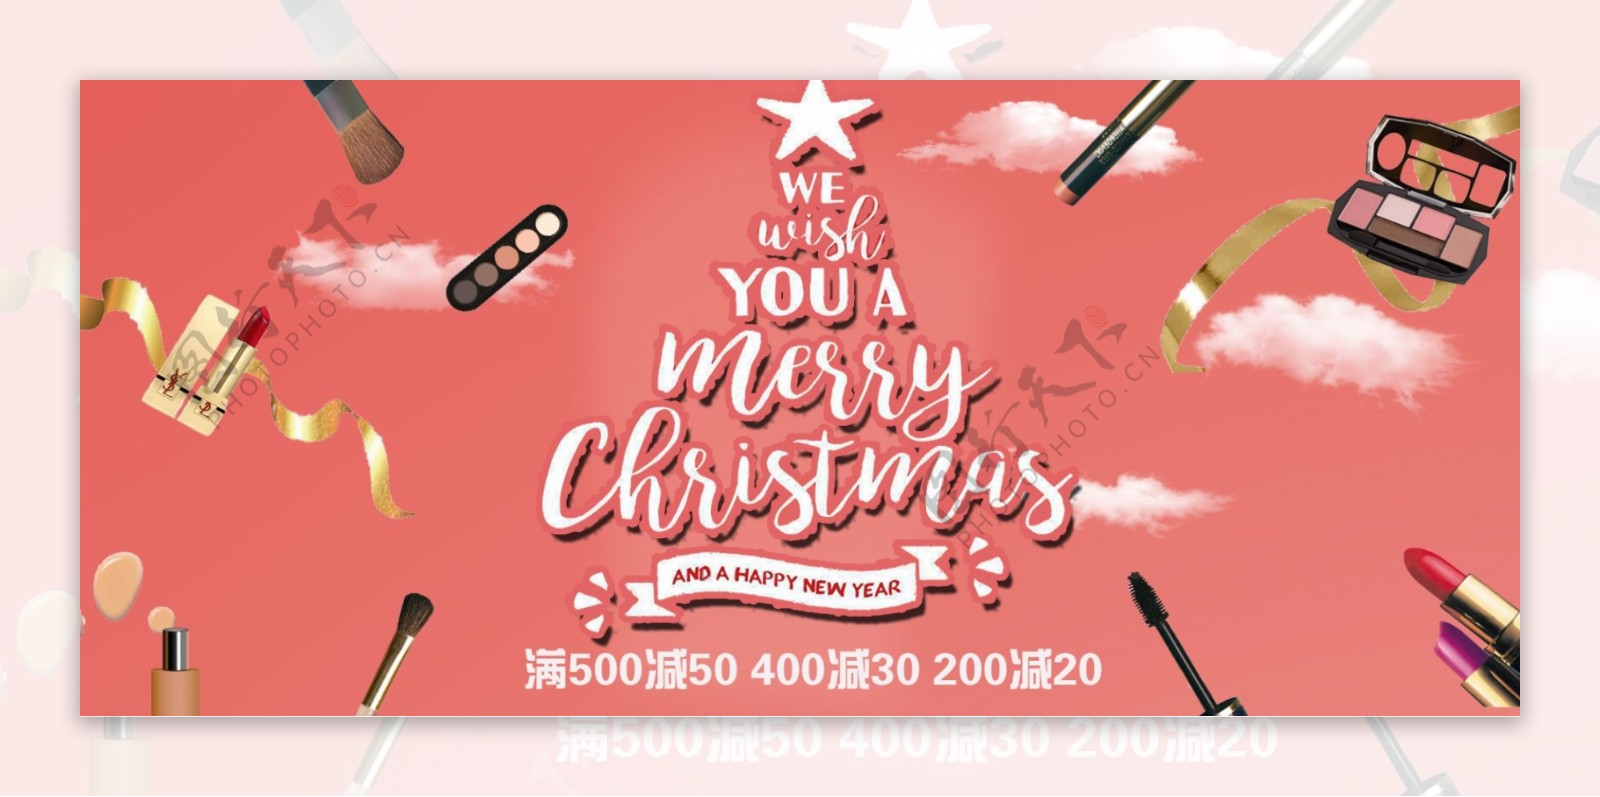 时尚简约化妆品圣诞节促销淘宝电商海报